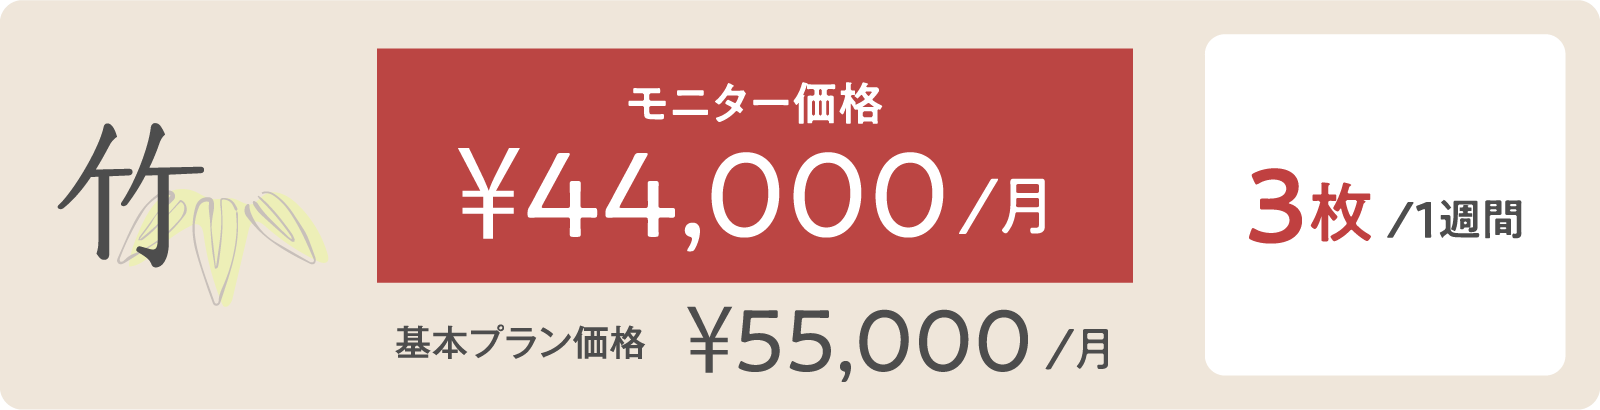 竹モニター価格 ¥44,000/月 3枚/１週間